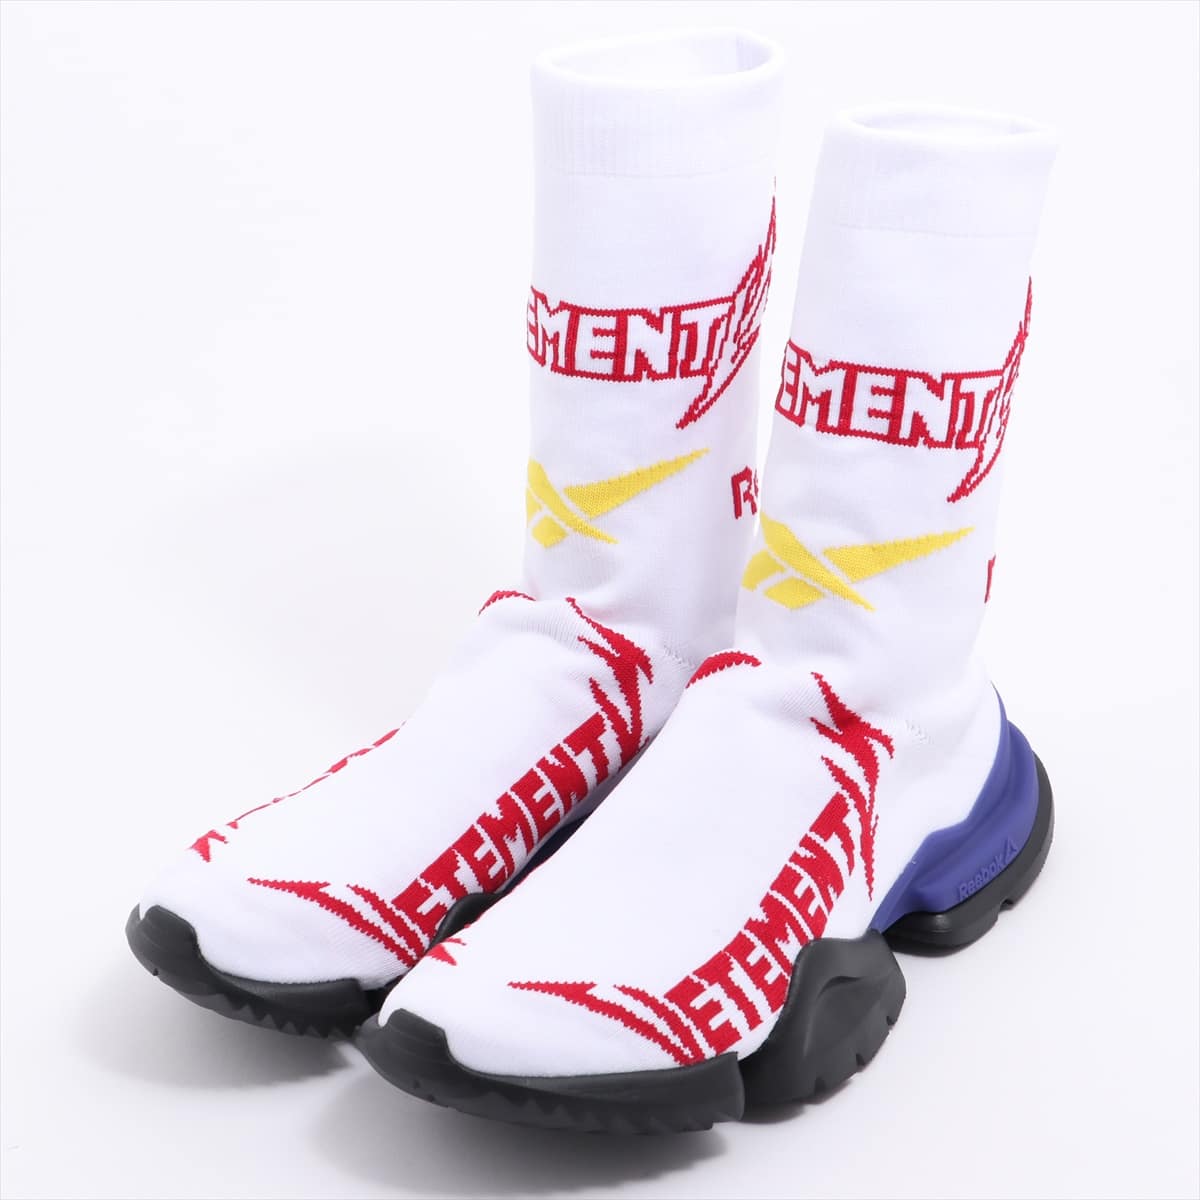 リーボック×ヴェトモン ポリエステル ブーツ EUR 37.5 レディース ホワイト Metal sock boots